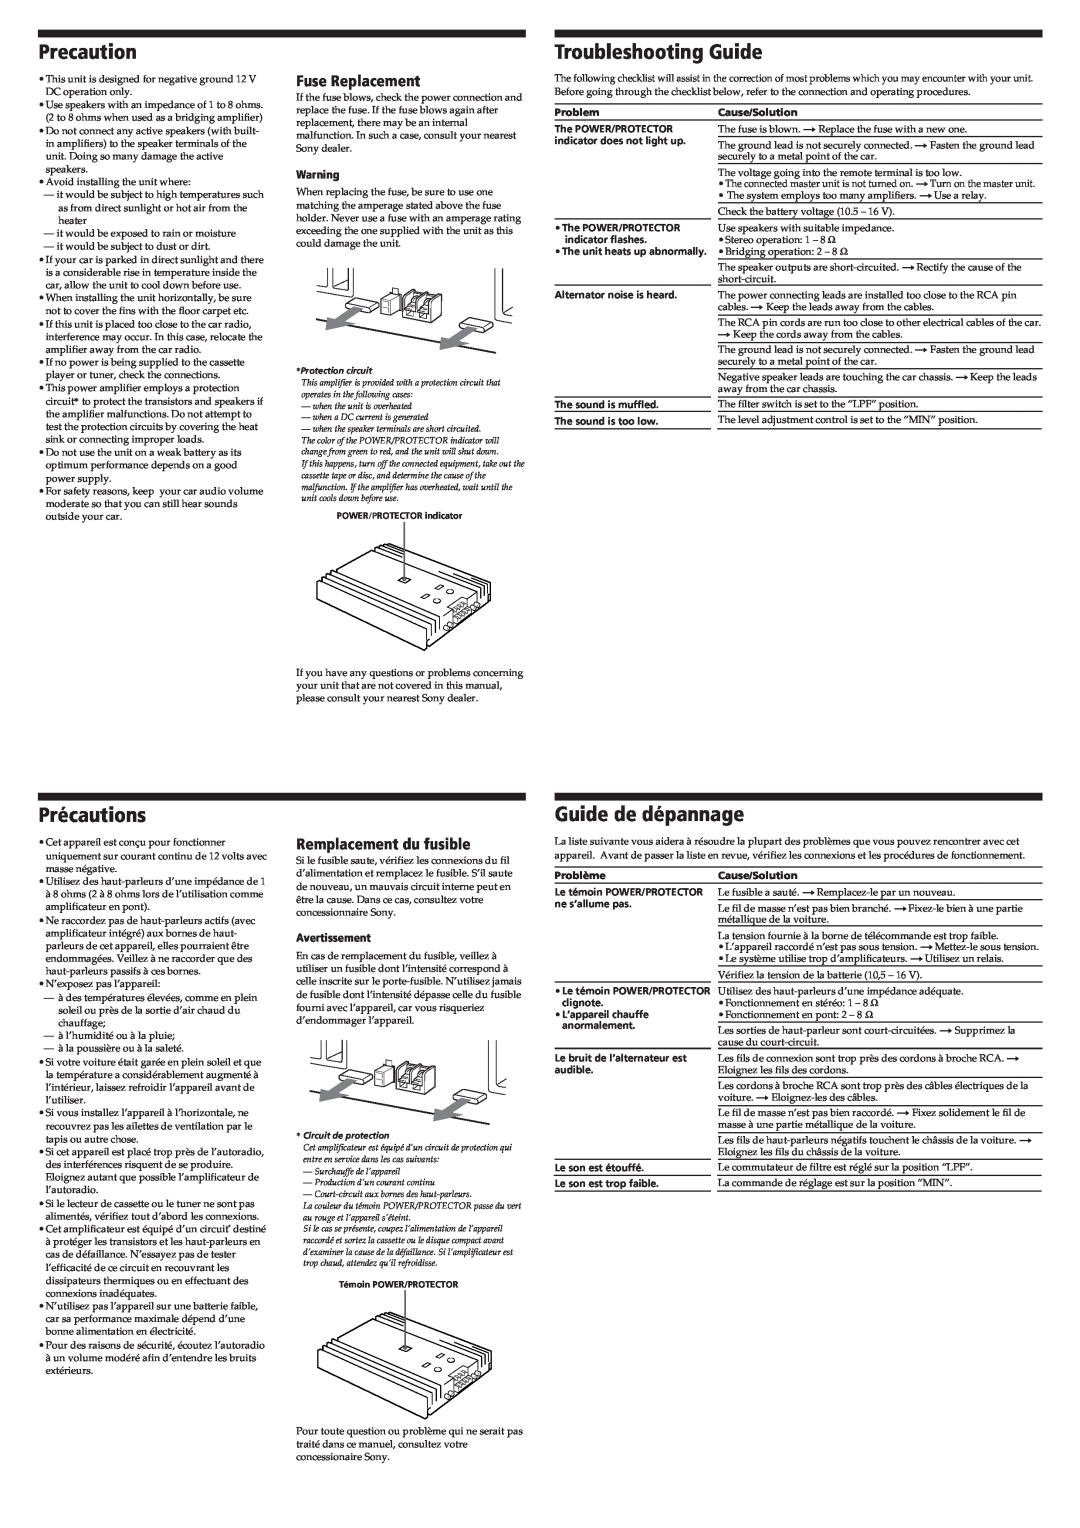 Sony XM-450G Precaution, Troubleshooting Guide, Précautions, Guide de dépannage, Fuse Replacement, Remplacement du fusible 